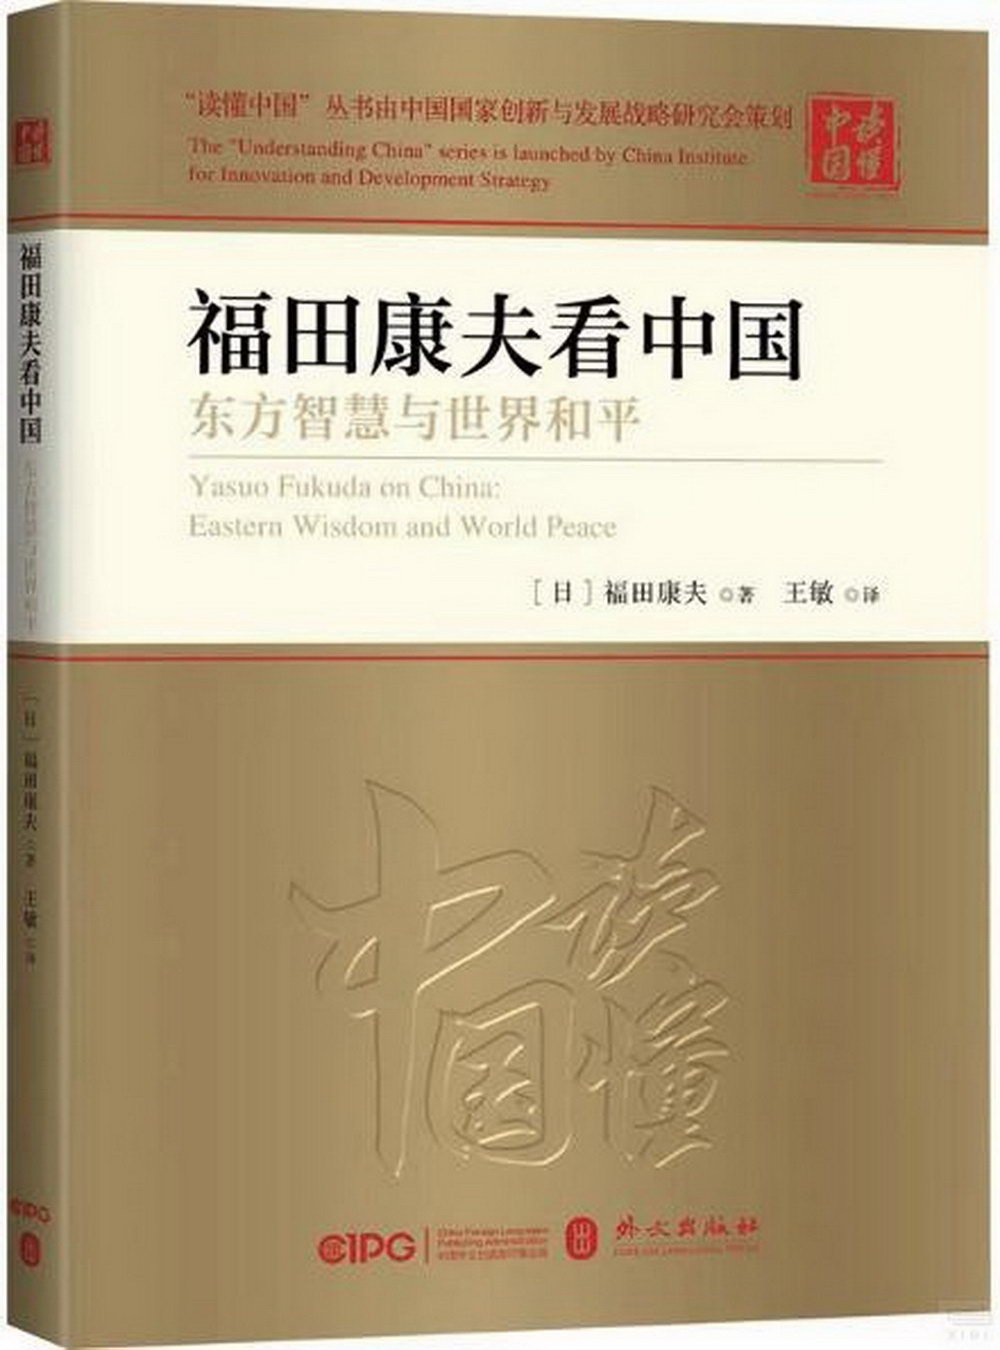 福田康夫看中國：東方智慧與世界和平